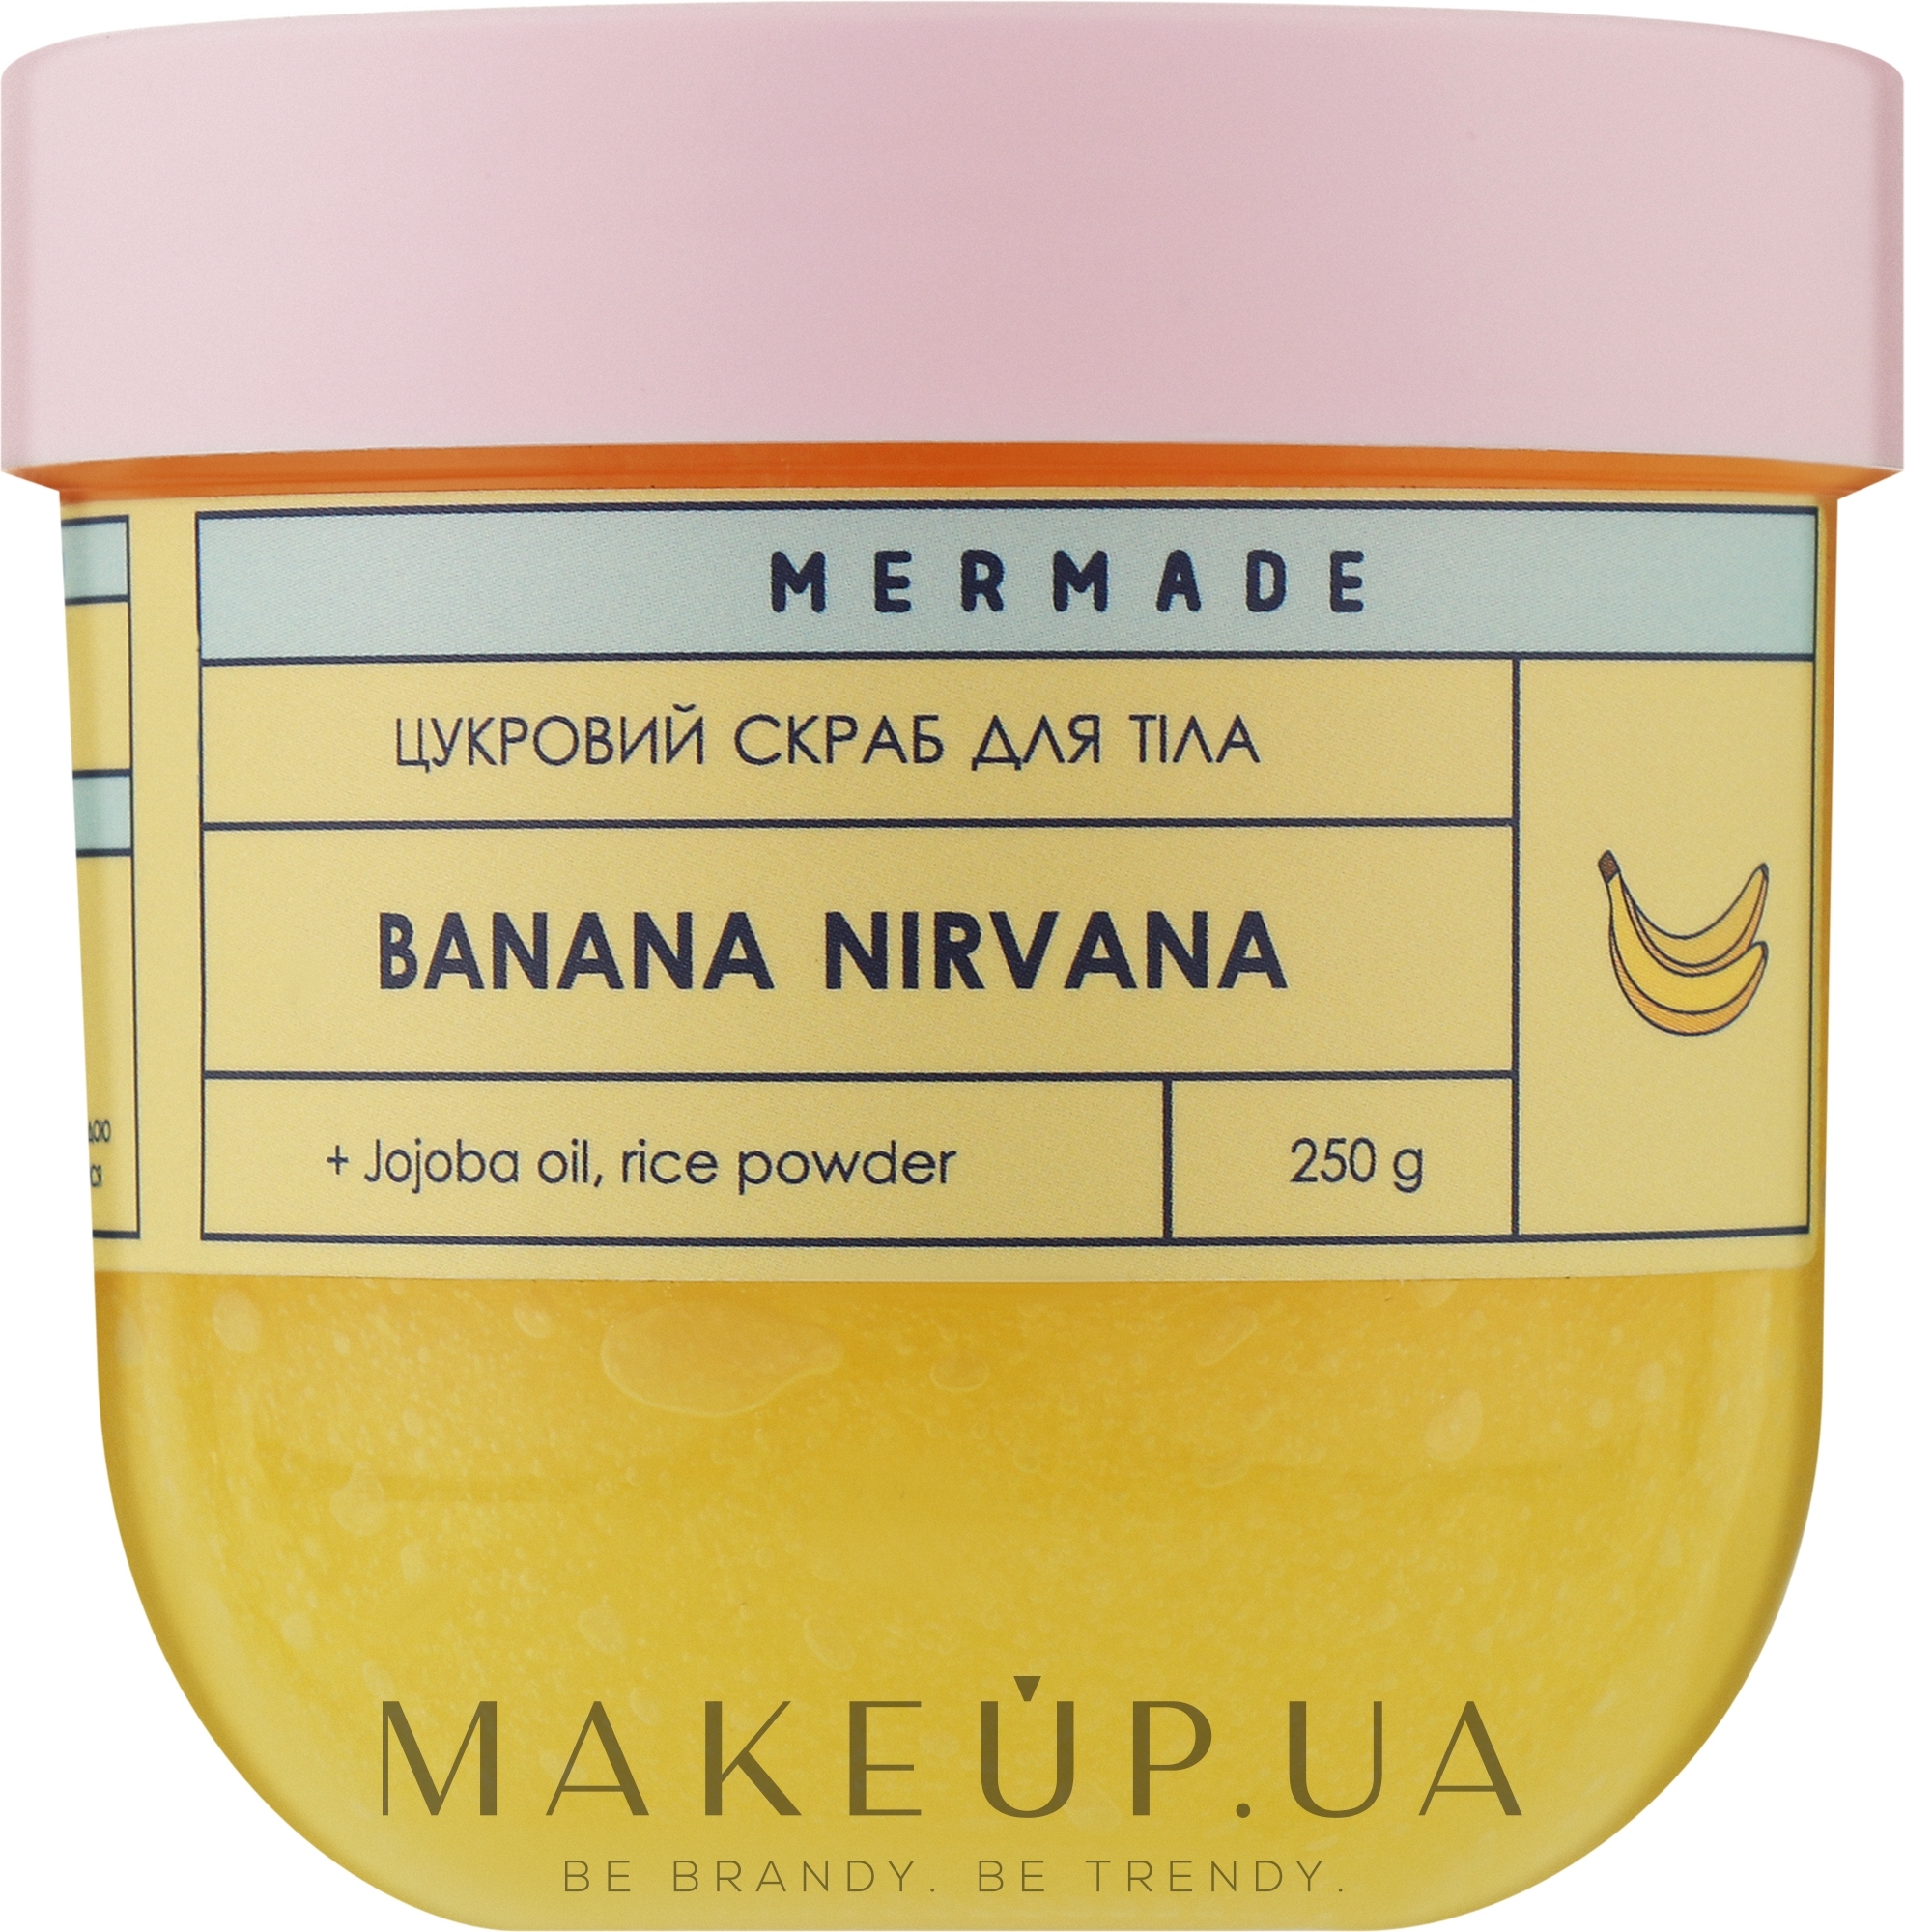 Цукровий скраб для тіла - Mermade Banana Nirvana — фото 250g